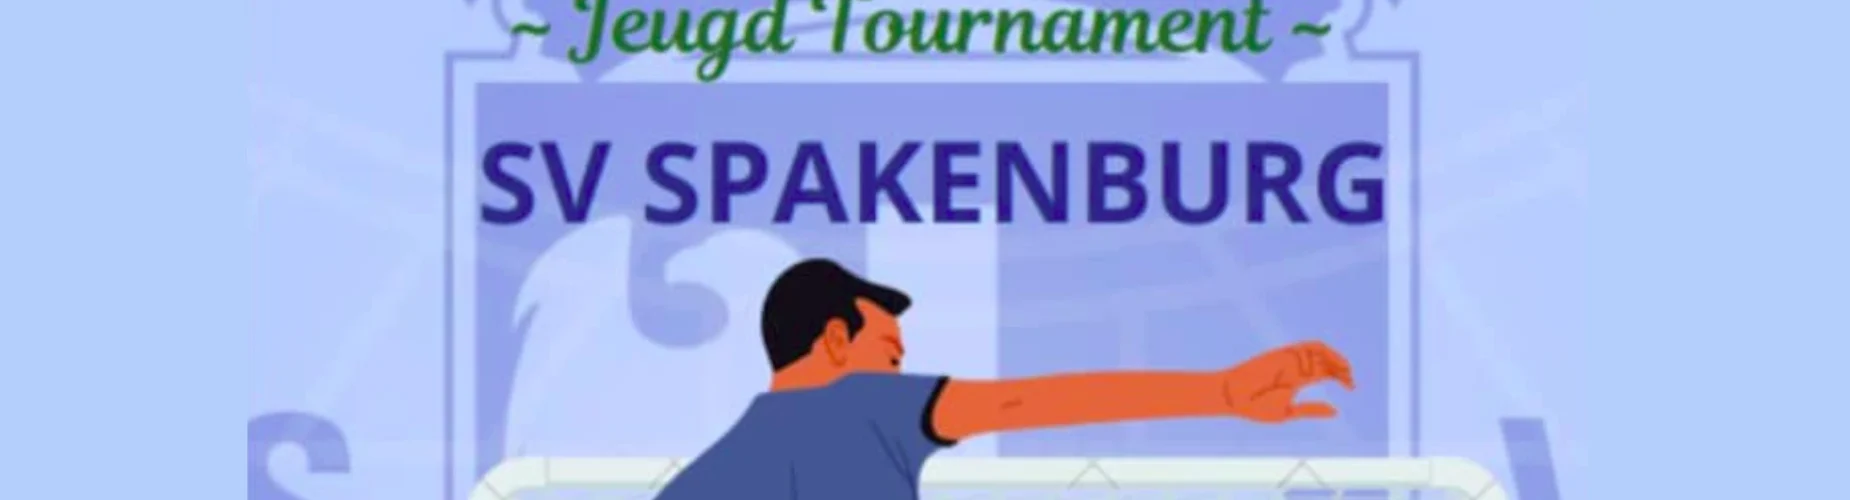 Banner - JO13 - Spakenburg Tournament - sv Spakenburg - Bunschoten-Spakenburg